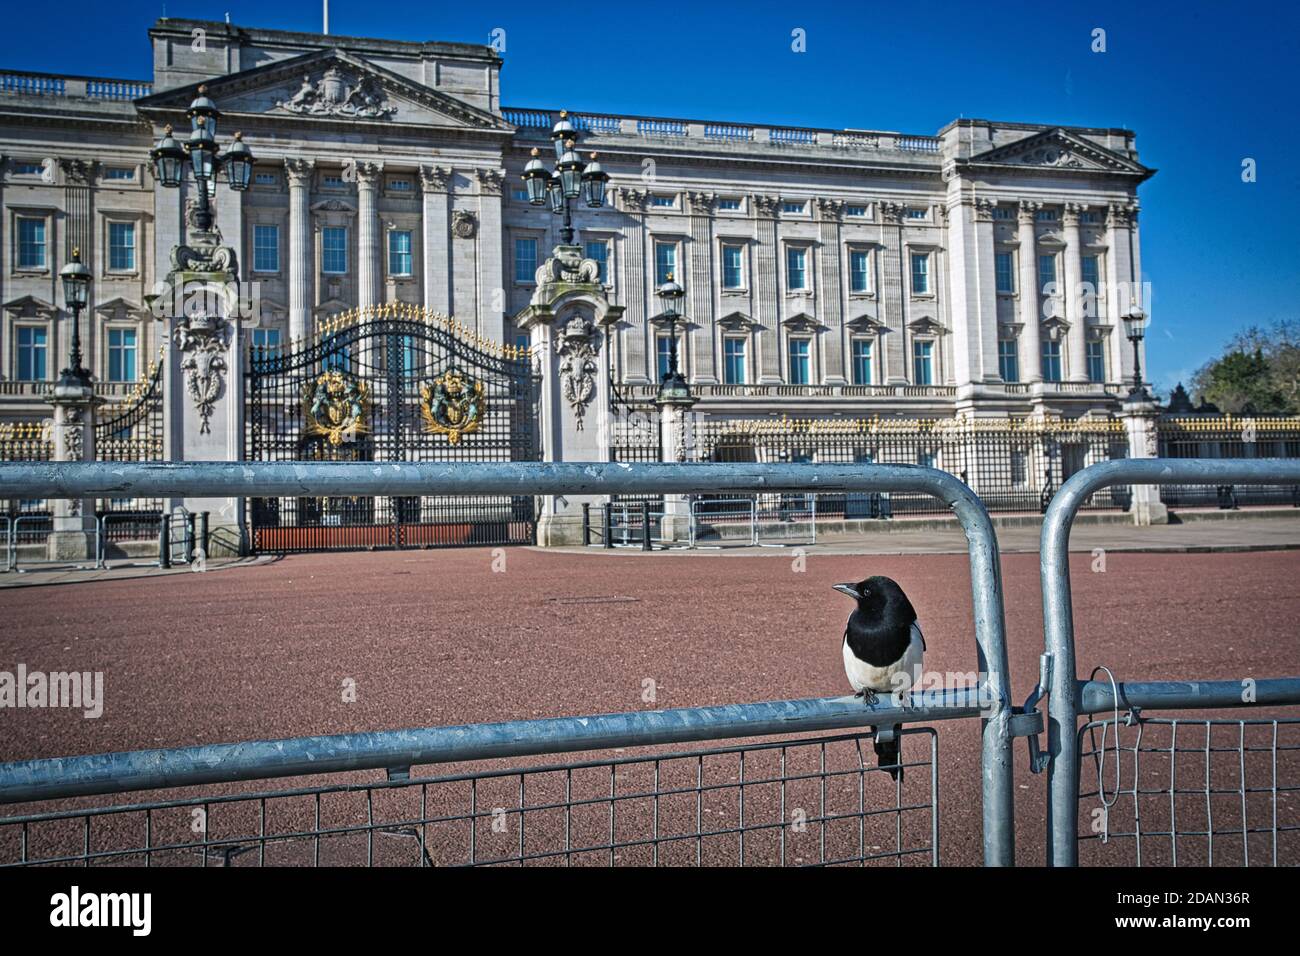 GRAN BRETAÑA / Inglaterra / Londres / Un encierro irreal de la ciudad en Londres 24,3.2020/ El Palacio de Buckingham parece vacío con sólo un magpie sentado en la valla. Foto de stock